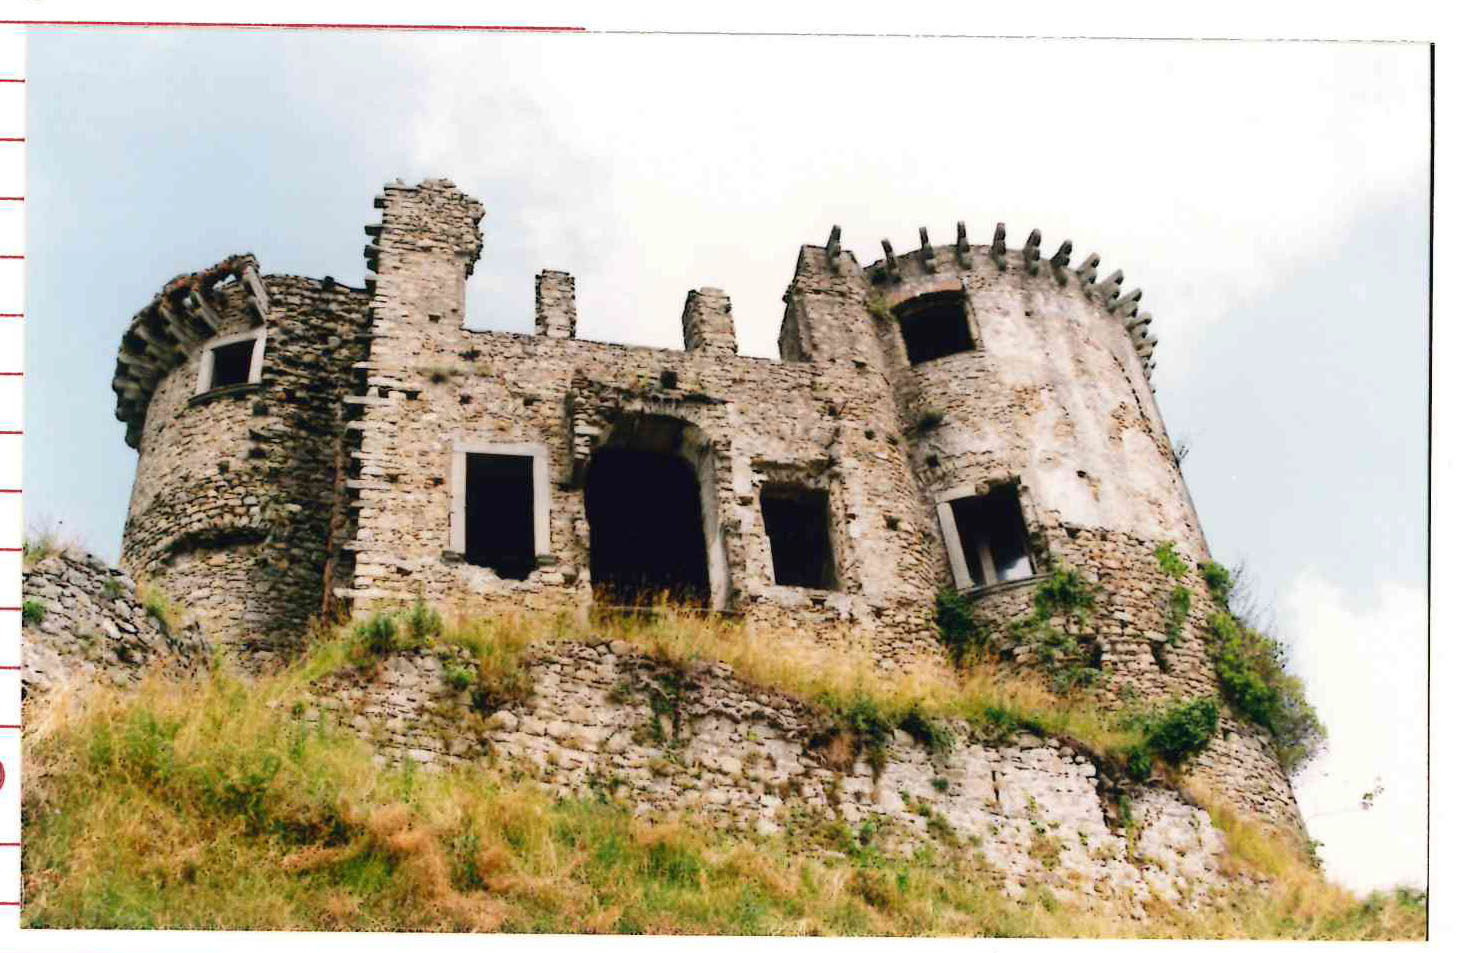 Rovine della rocca di Madrignano (fortificazione) - Calice al Cornoviglio (SP)  (XII)